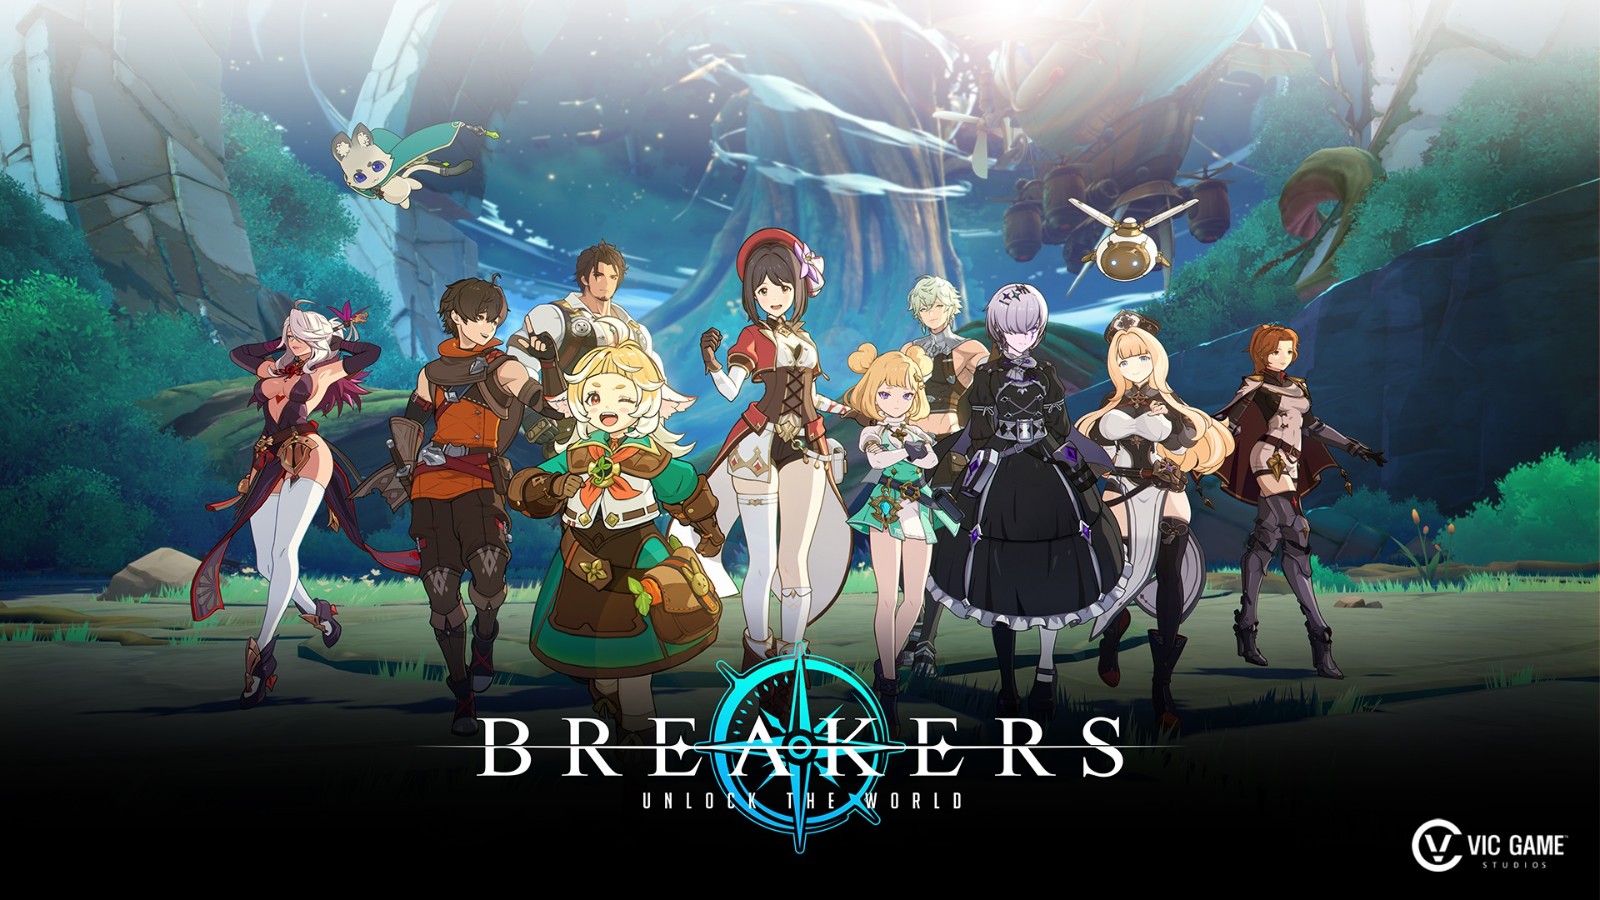 二次元开放世界RPG《Breakers: Unlock the World》游玩预告